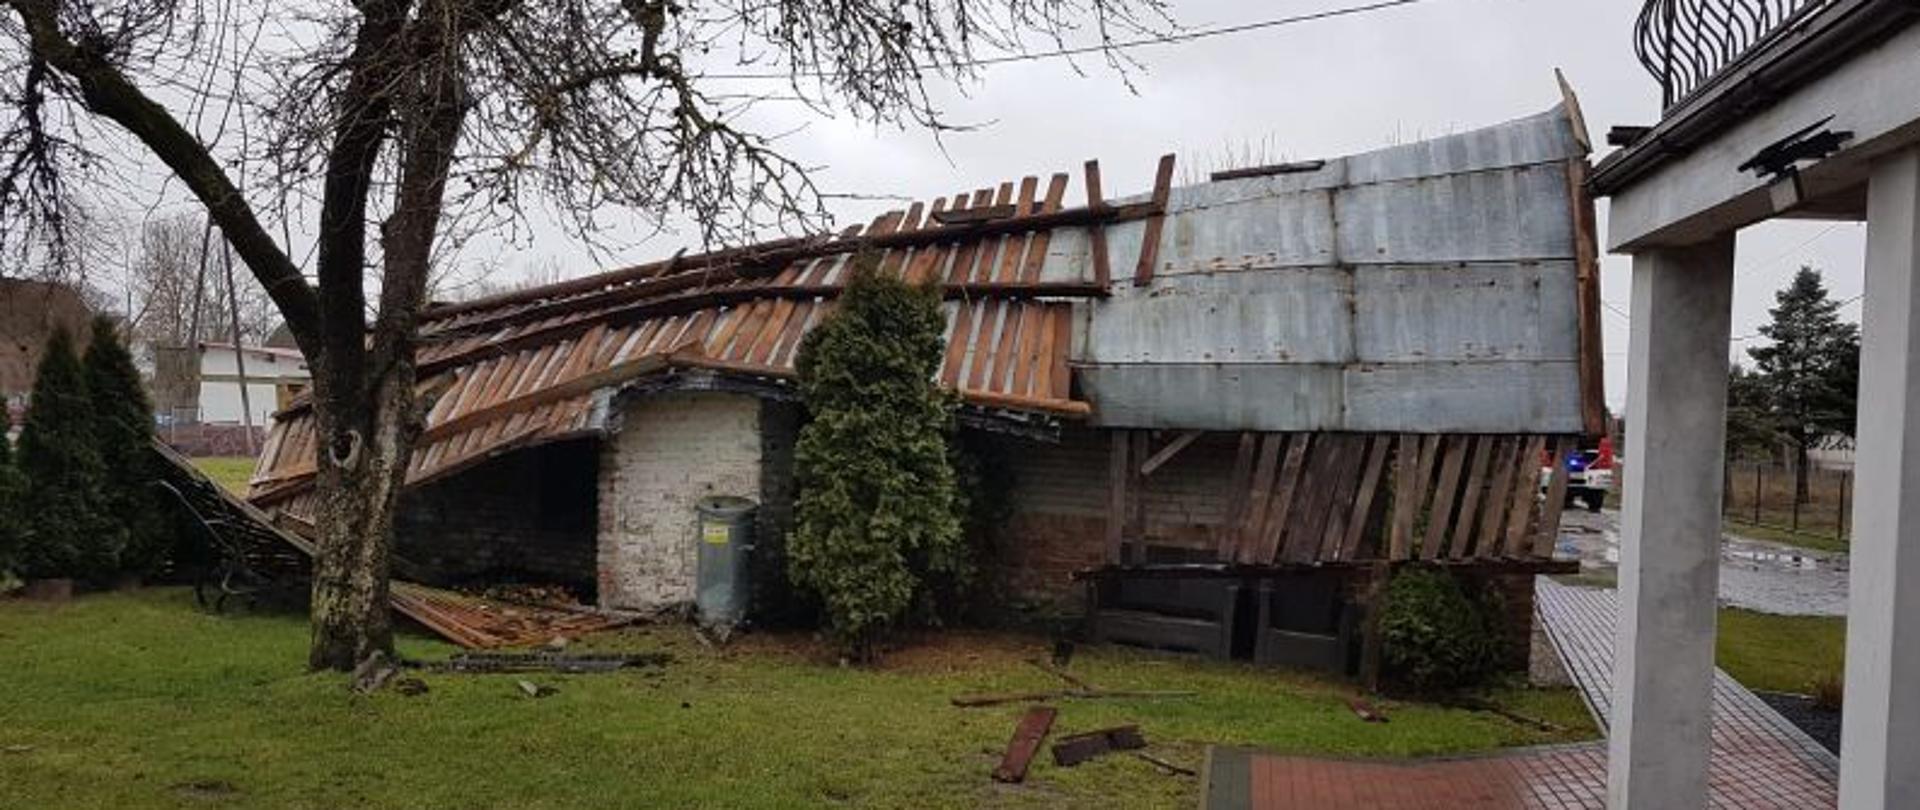 Zdjęcie wykonane w dzień. Przedstawia zerwany dach. Dach jest wykonany z blachy. Jest uszkodzony i wygląda tak jak by zerwał się w całości.